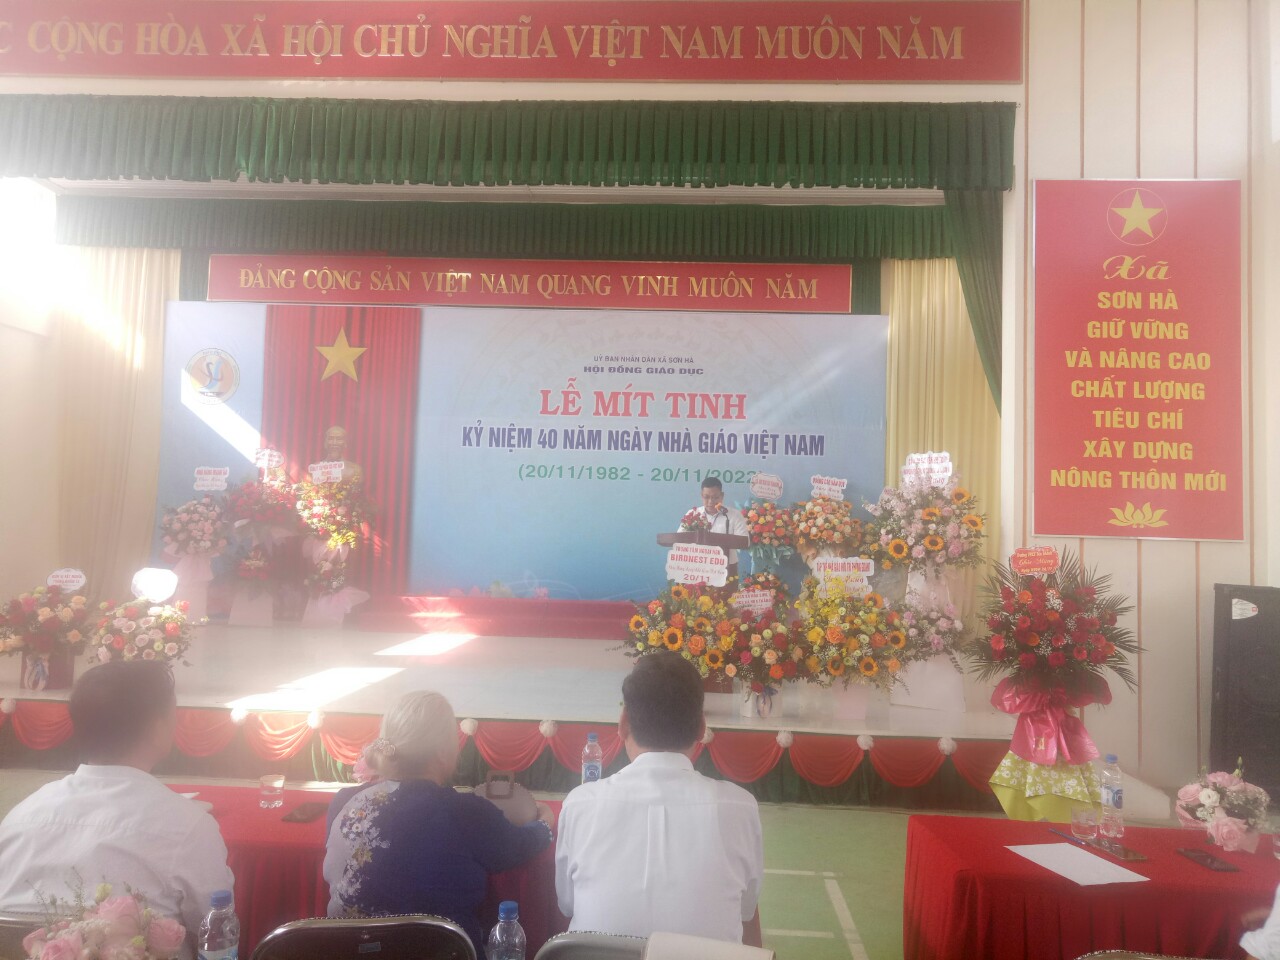 Đ/c Nguyễn Phúc Thật, Bí thư Đảng ủy - Chủ tịch UBND xã phát biểu chúc mừng tại buổi lễ